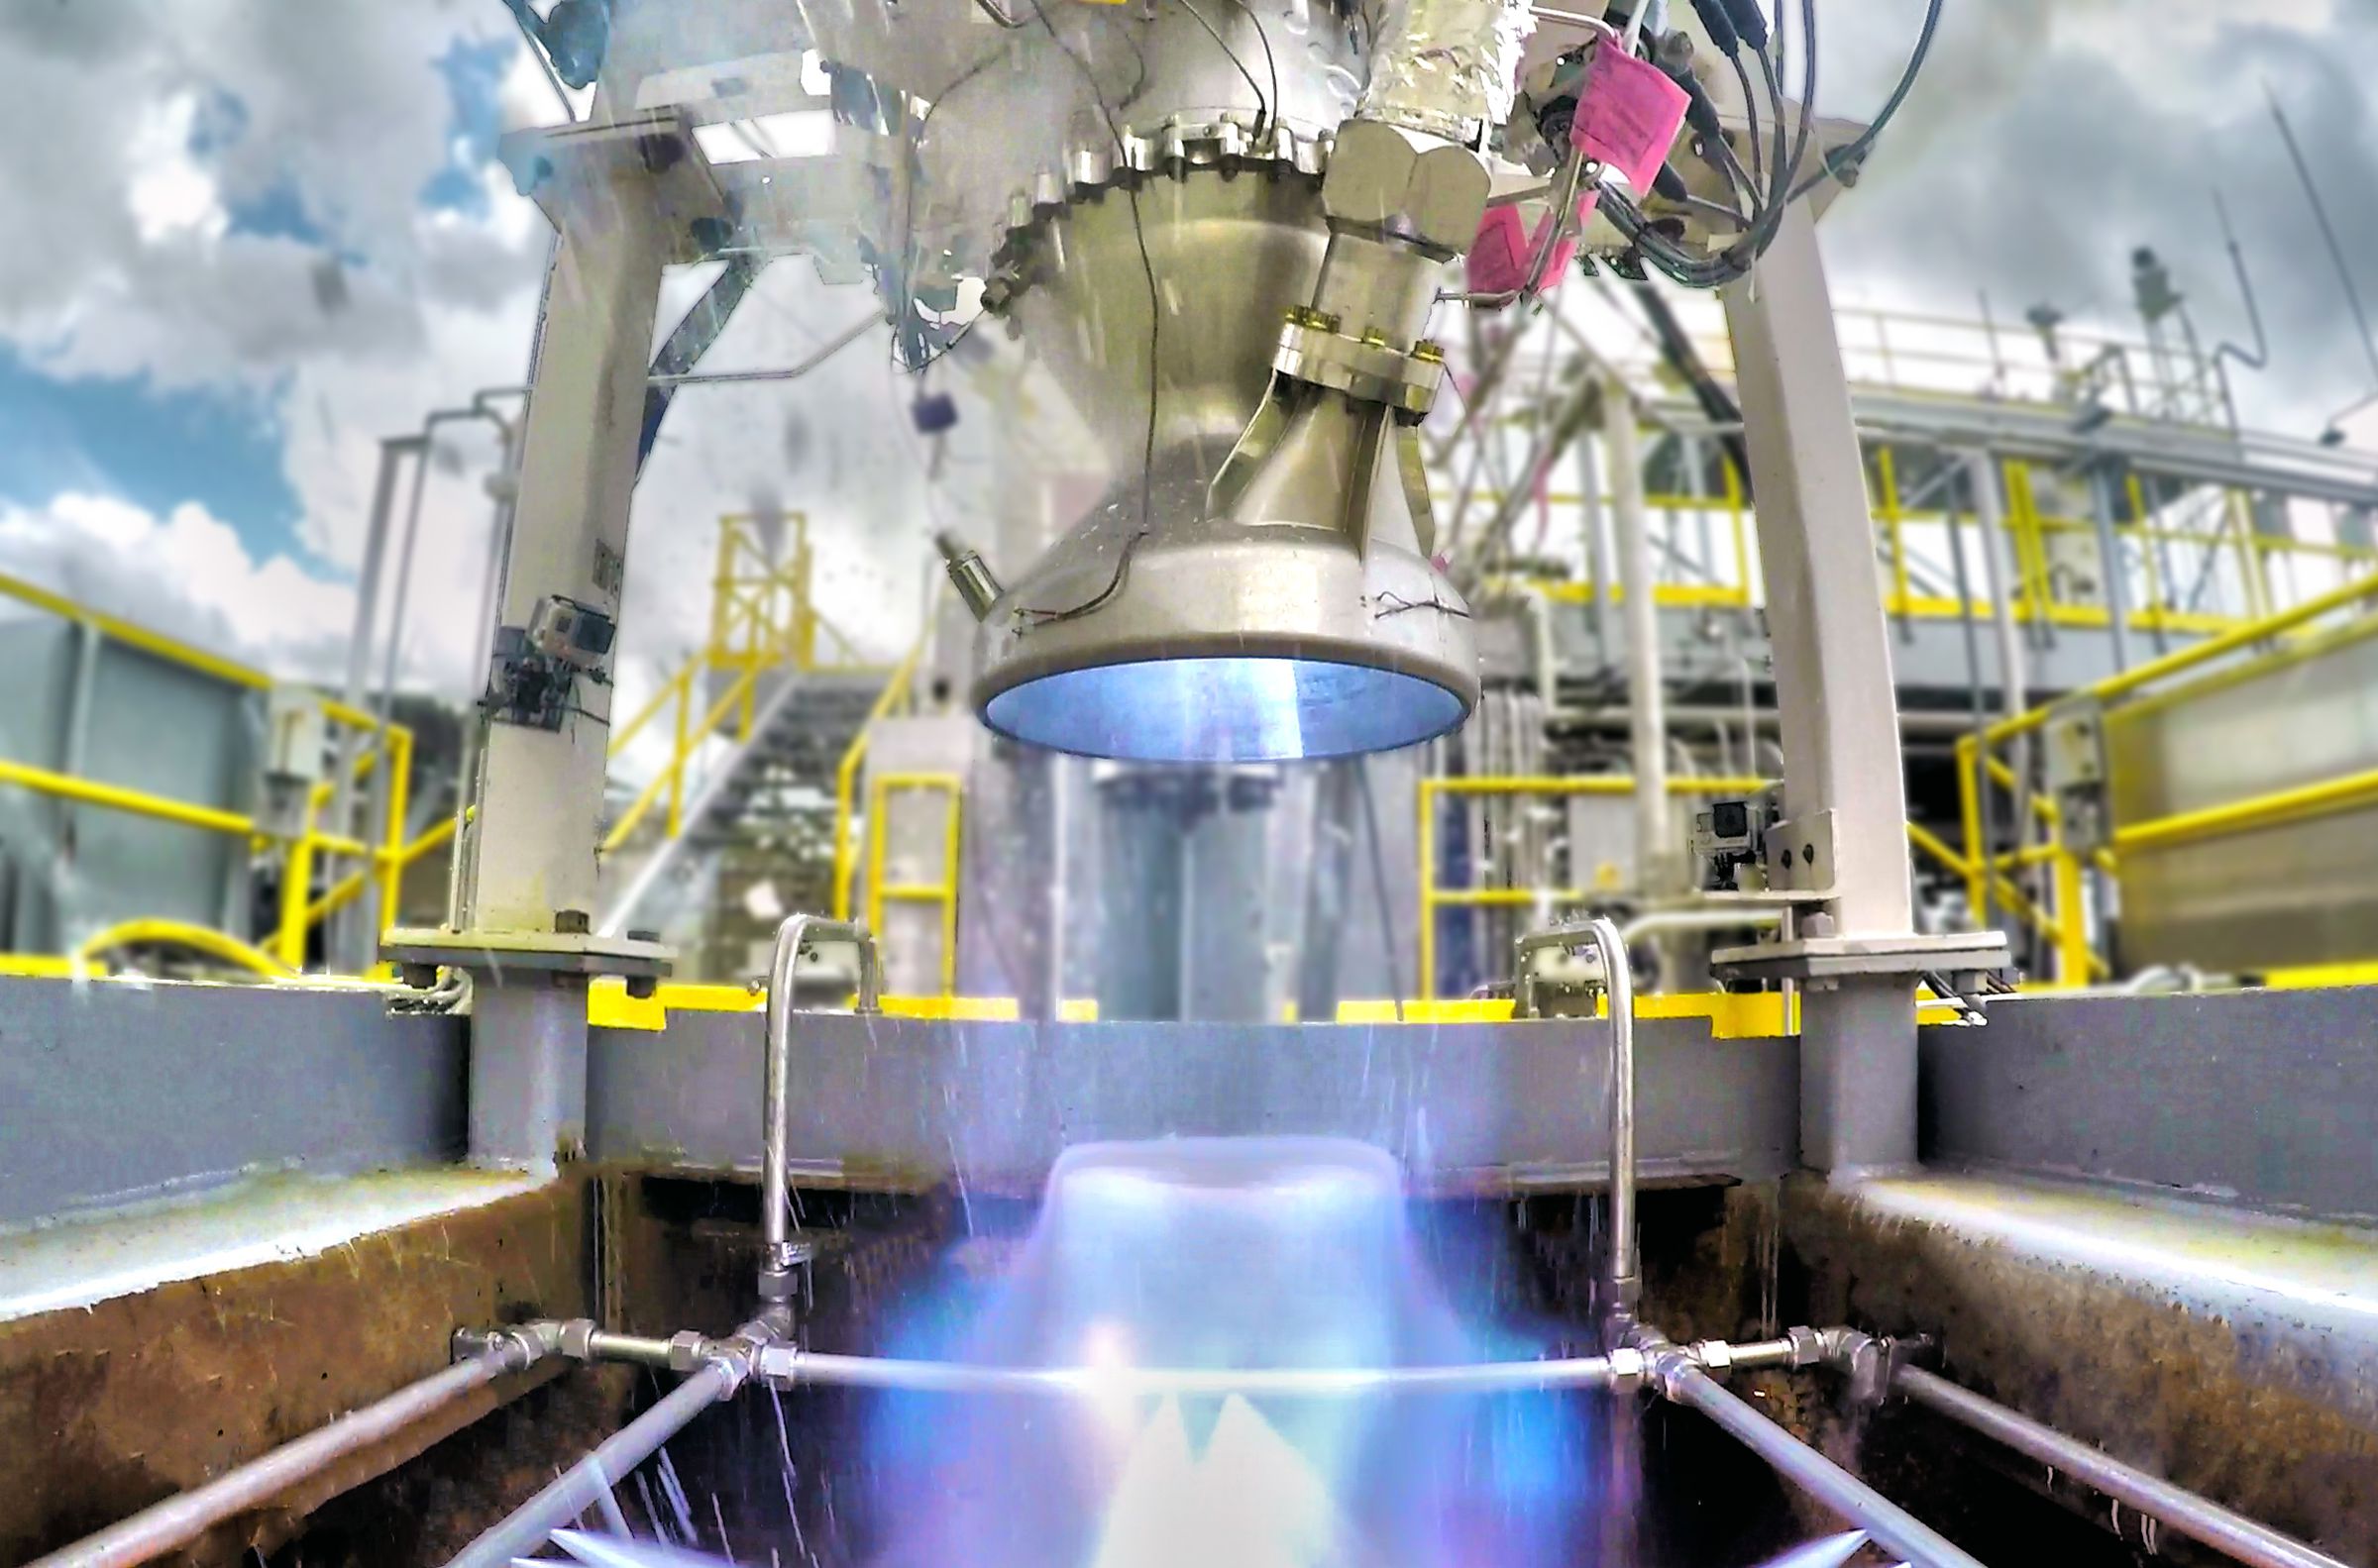 Relativity’s Aeon engine undergoing a test fire at Stennis Space Center.